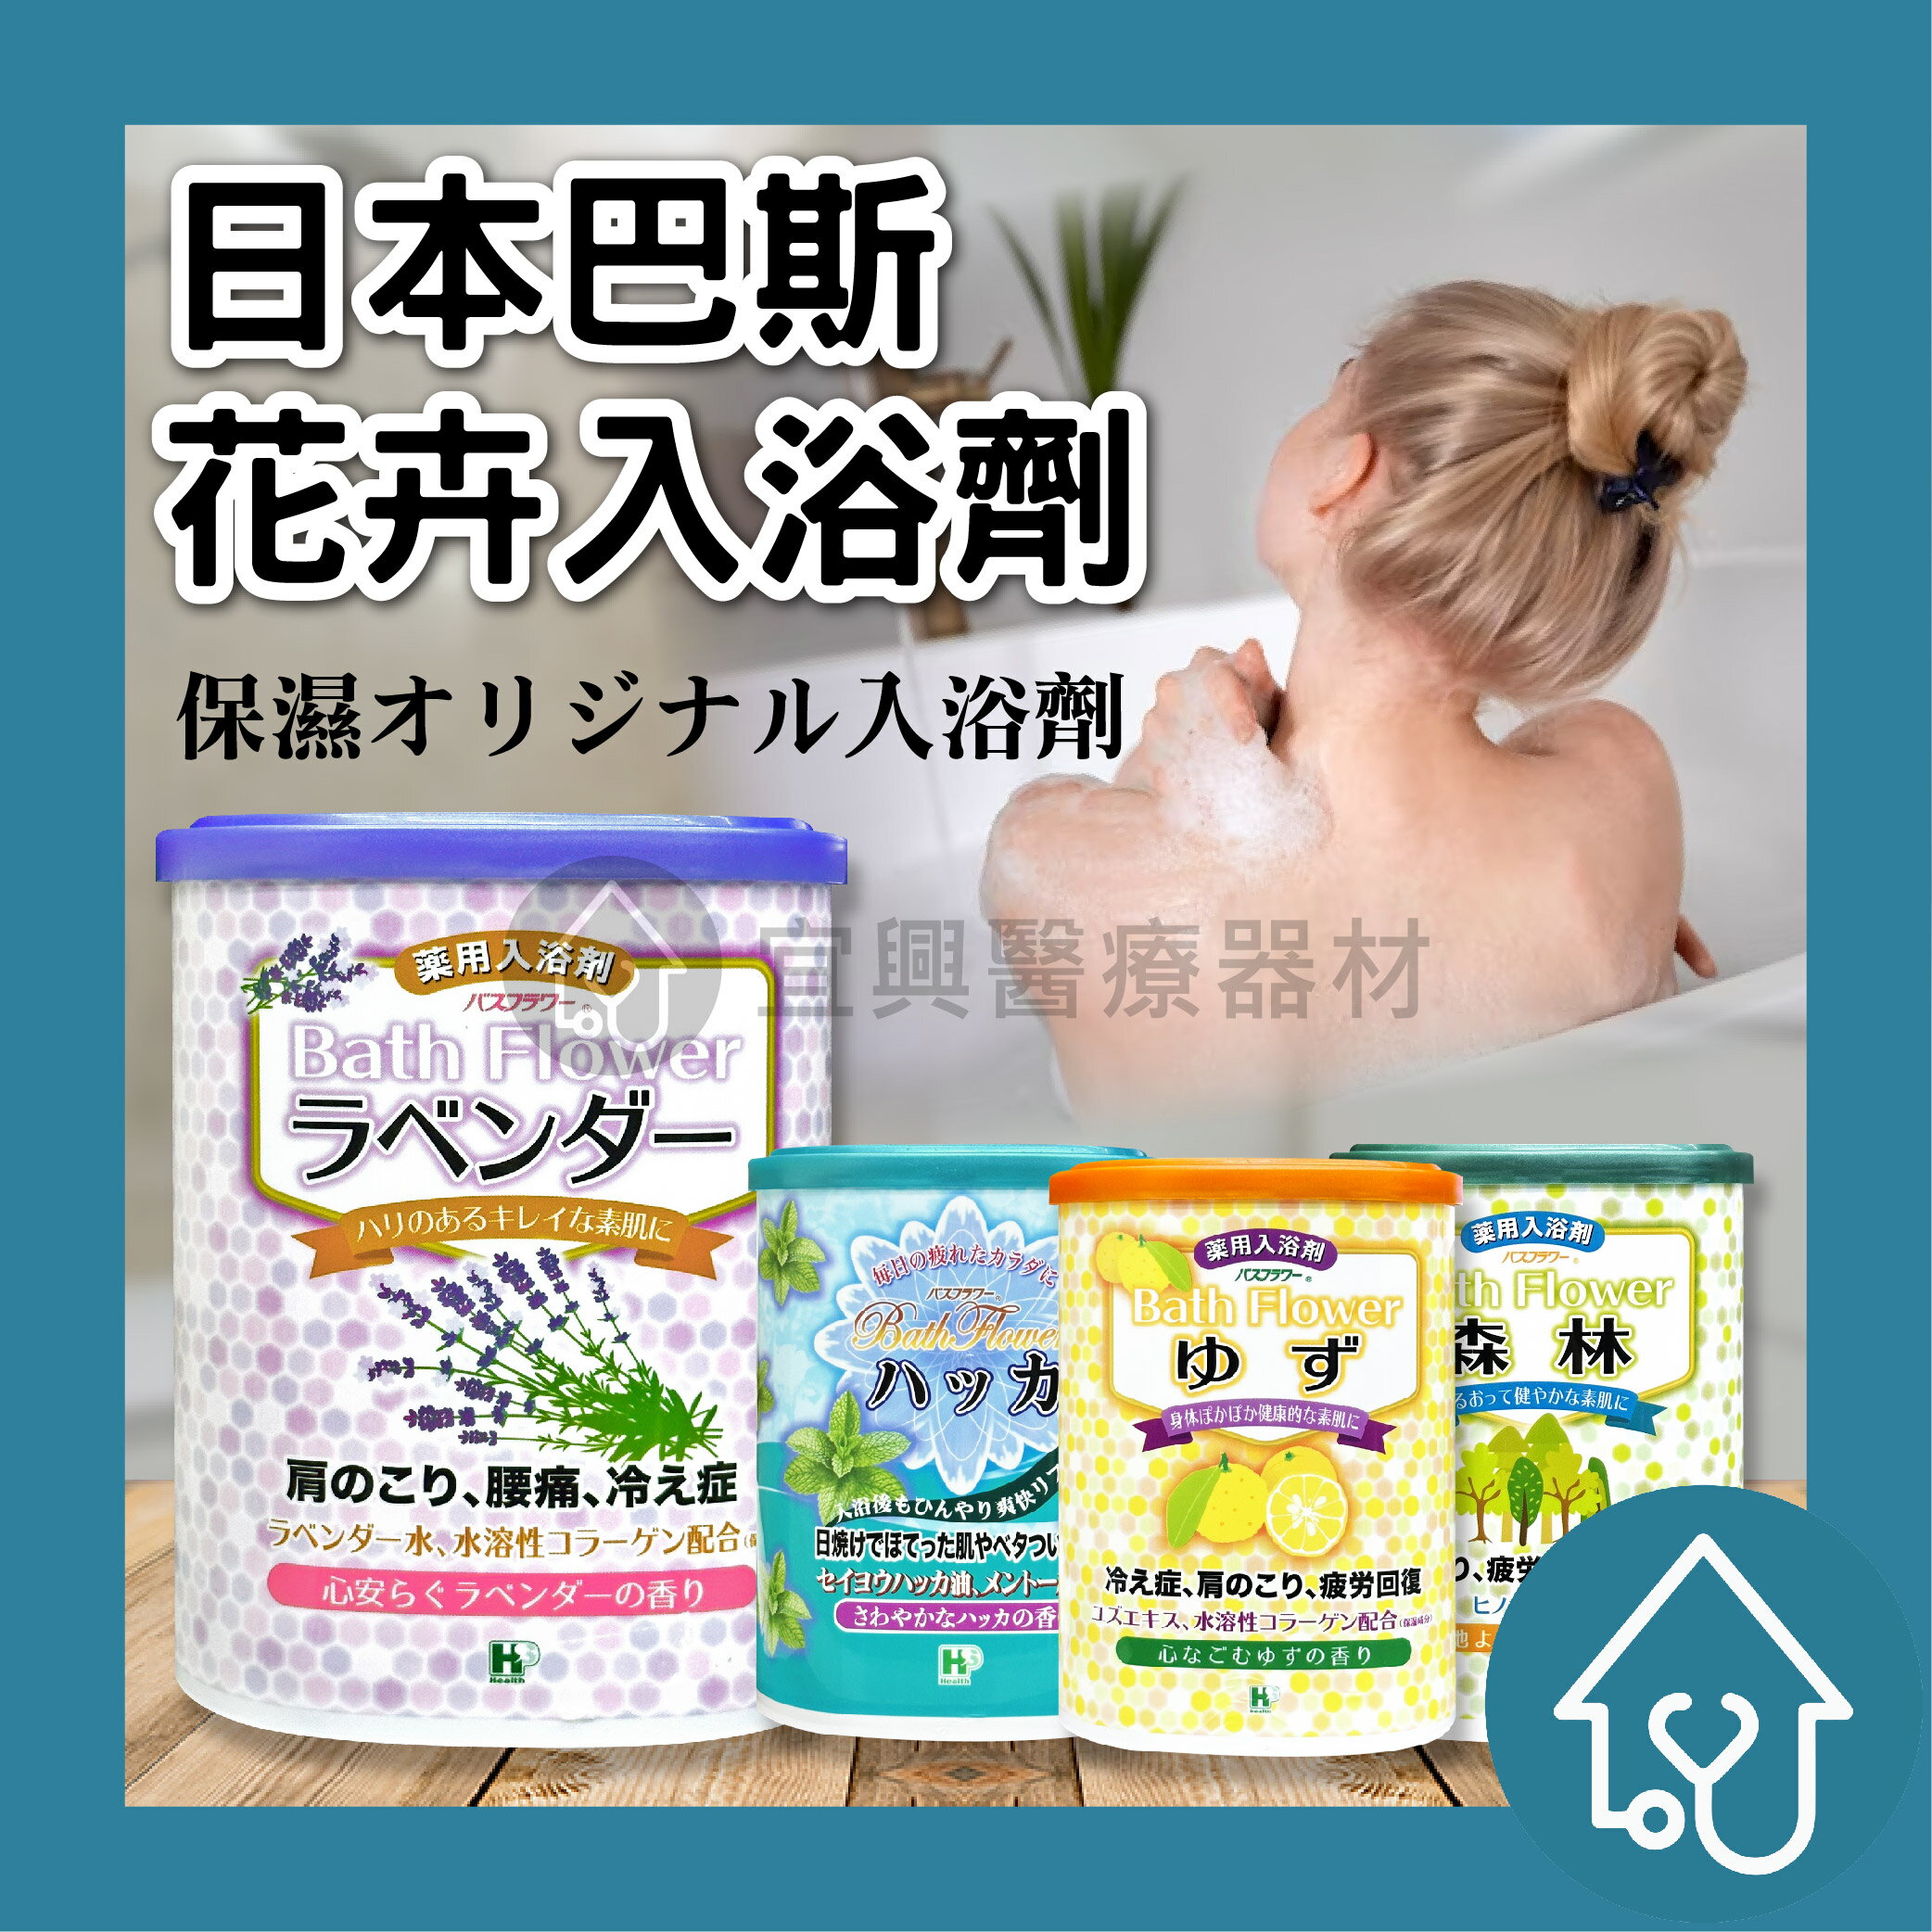 日本 巴斯花卉入浴劑 680g : 薄荷清涼、森林、柚子、茉莉花 藥浴入浴劑 泡湯 泡澡粉 HEA泡湯溫泉入浴劑